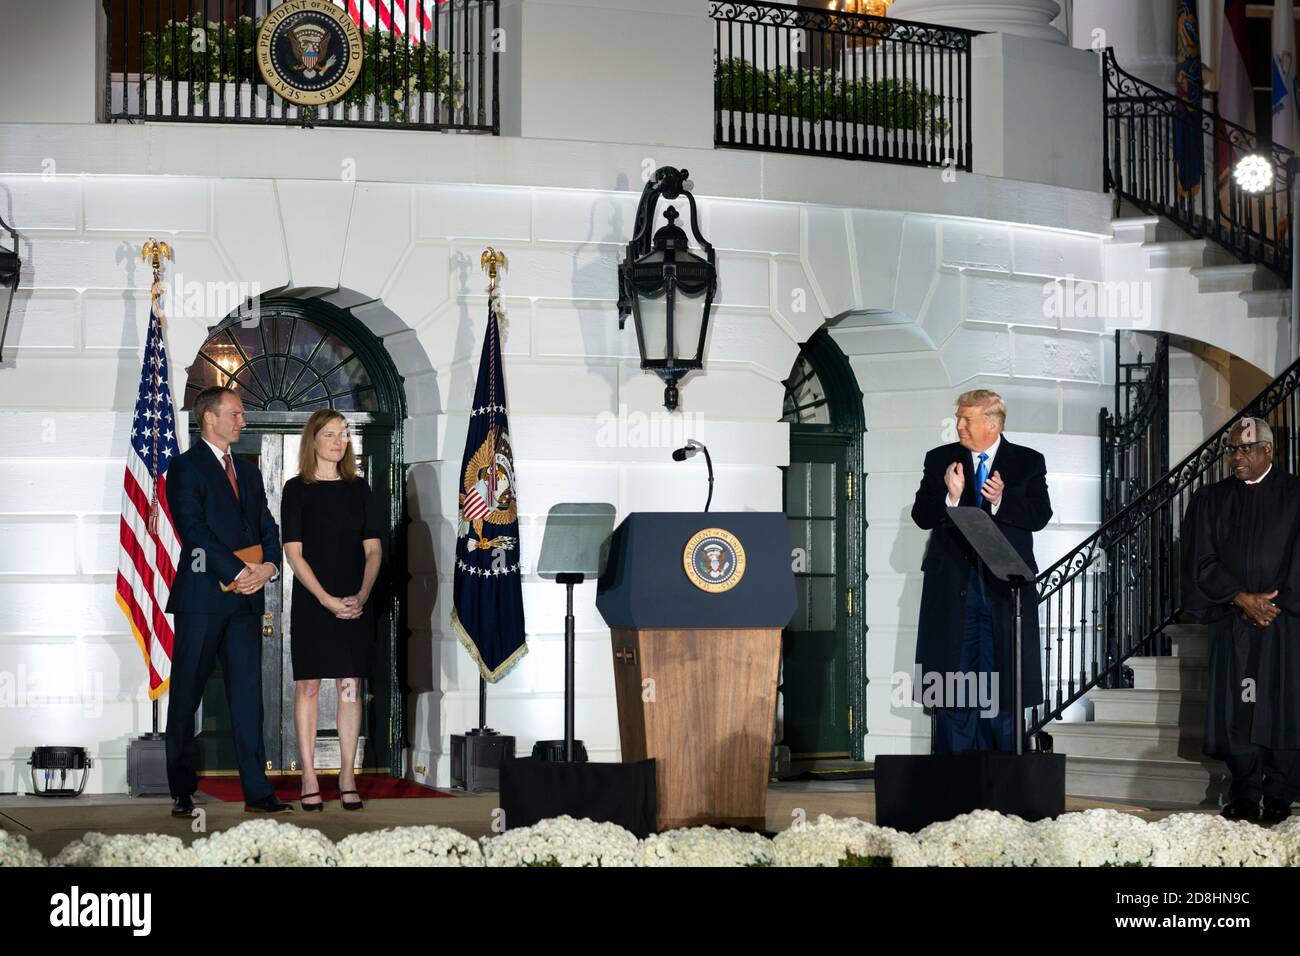 El presidente estadounidense Donald Trump aplaude a la juez asociada de la Corte Suprema Amy Coney Barrett y a su esposo Jesse Barrett durante la ceremonia de juramento en el South Lawn de la Casa Blanca el 26 de octubre de 2020 en Washington, DC. Foto de stock